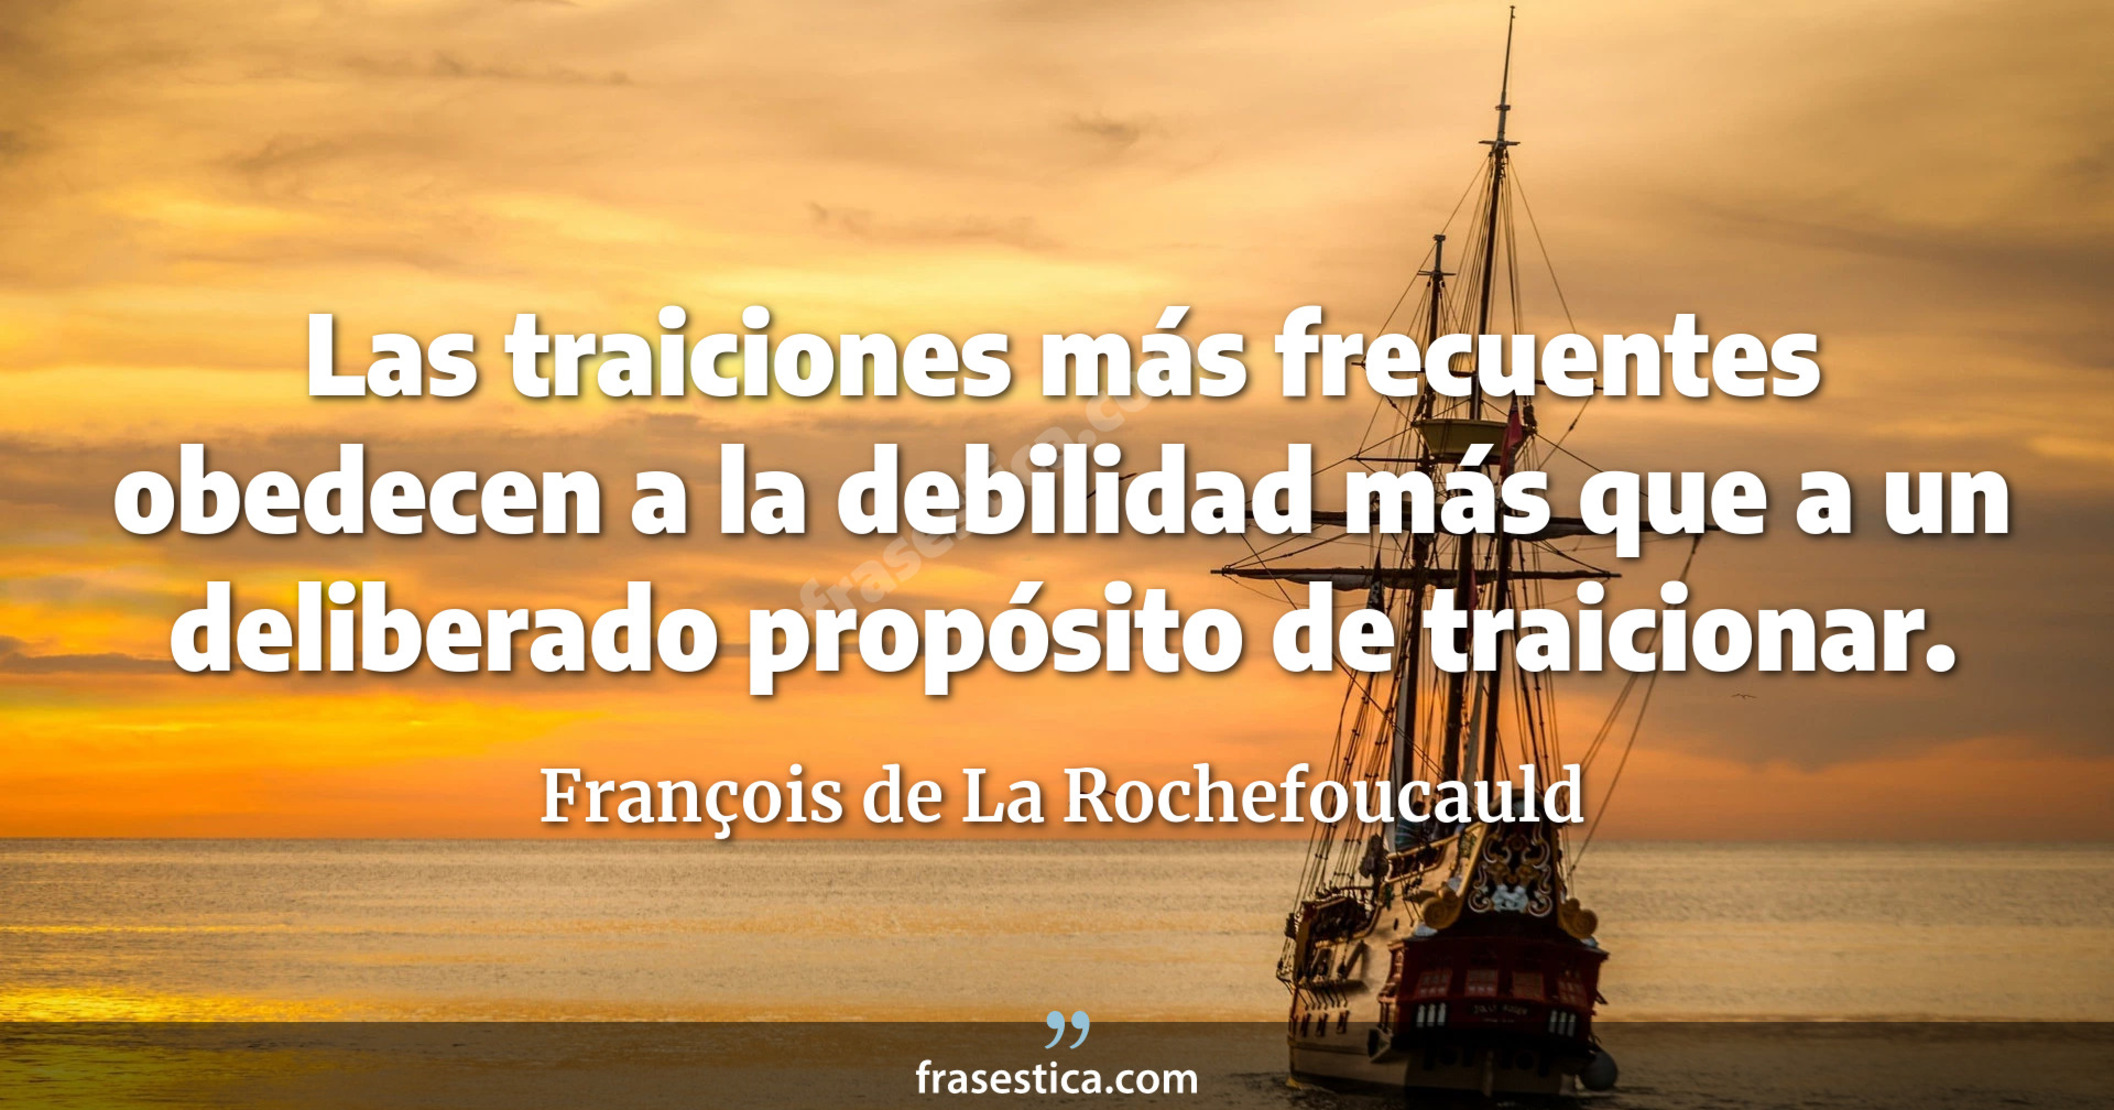 Las traiciones más frecuentes obedecen a la debilidad más que a un deliberado propósito de traicionar. - François de La Rochefoucauld